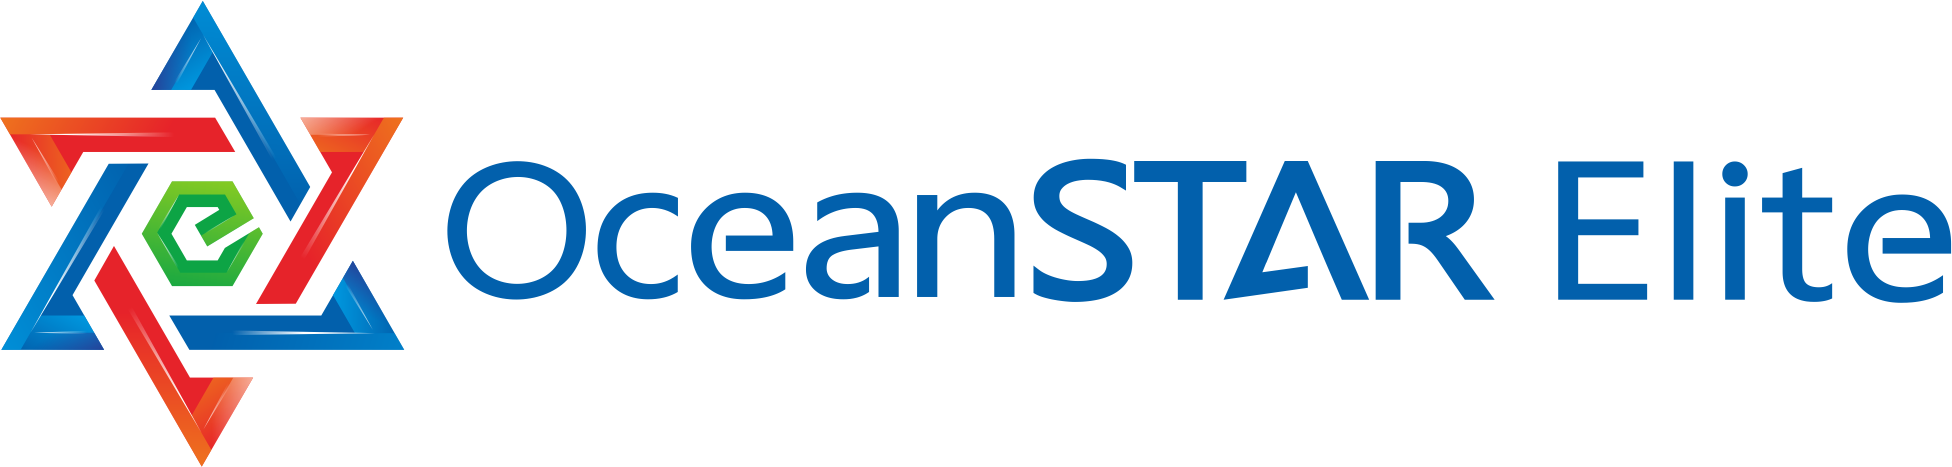 OceanSTAR Elite Group of Companies